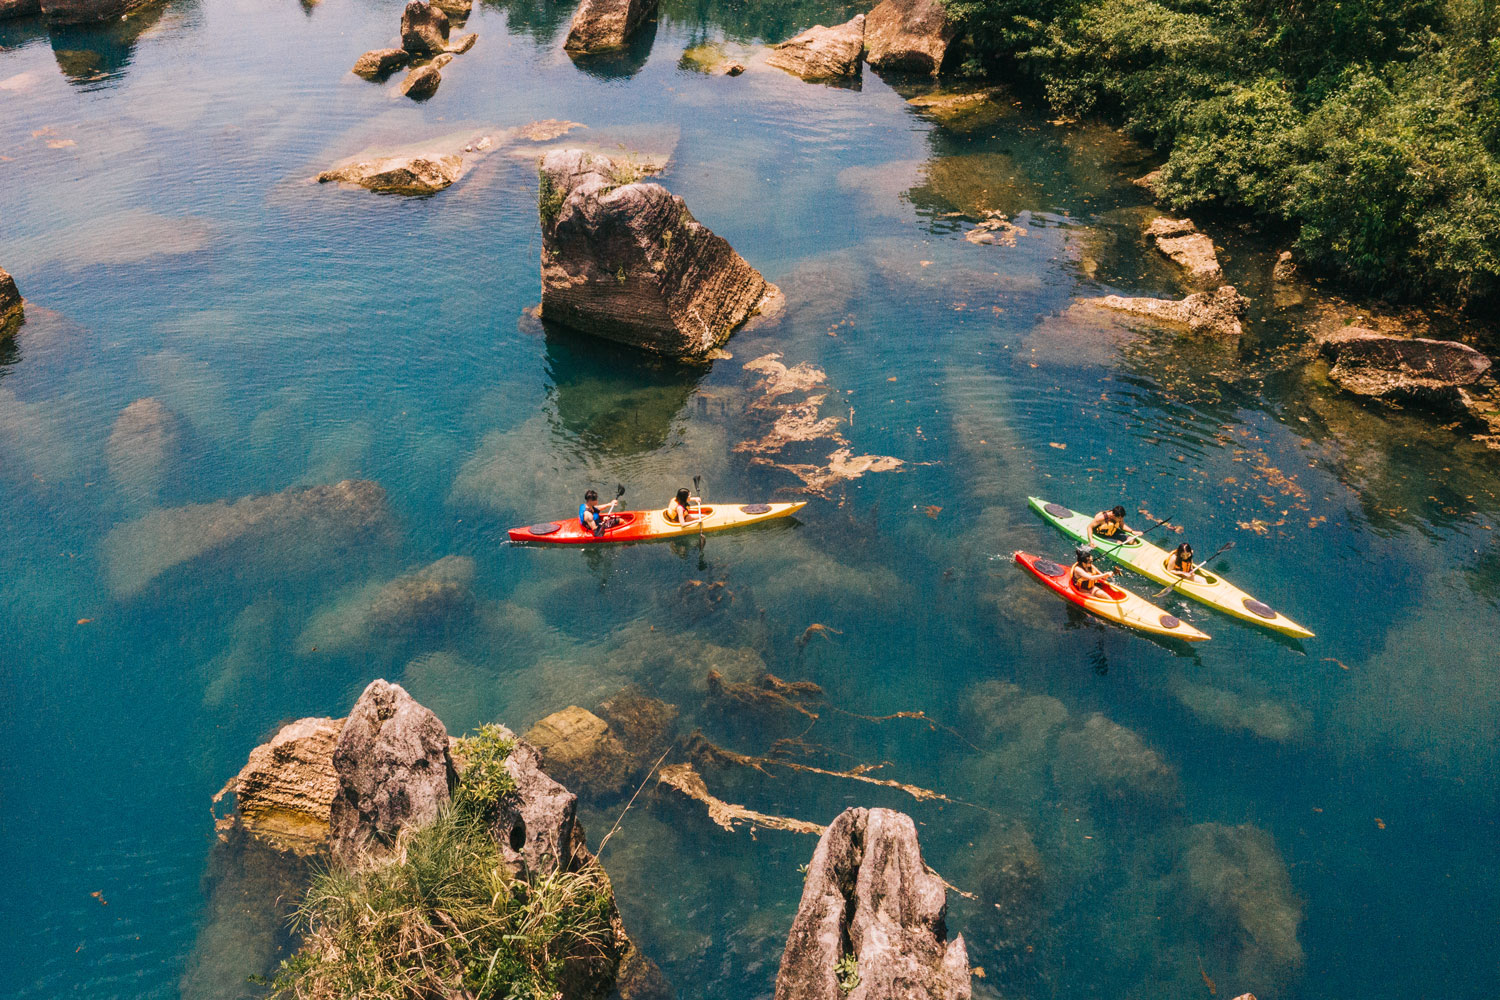 Tại Bãi đá cạn, bạn có thể tham gia bơi lội hoặc chèo kayak trên làn nước trong xanh.